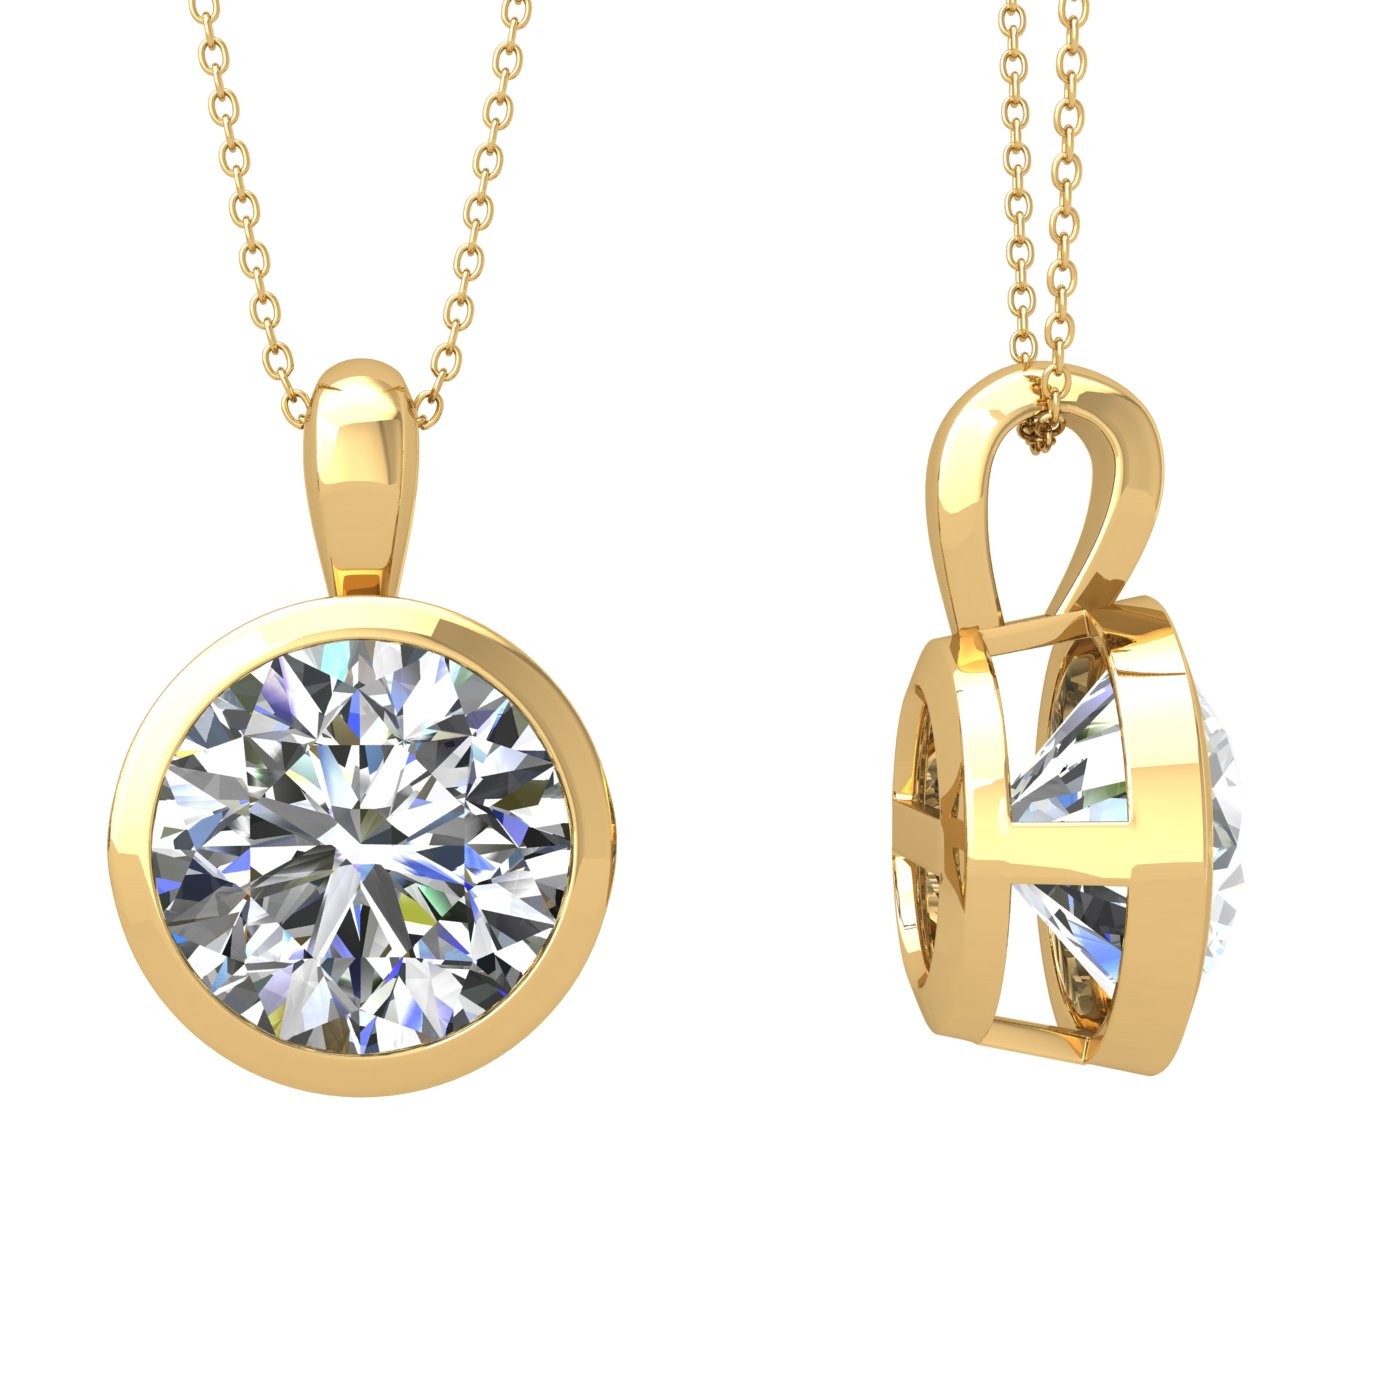 18k white gold 2.5 ct round shape bezel set diamond pendant Photos & images